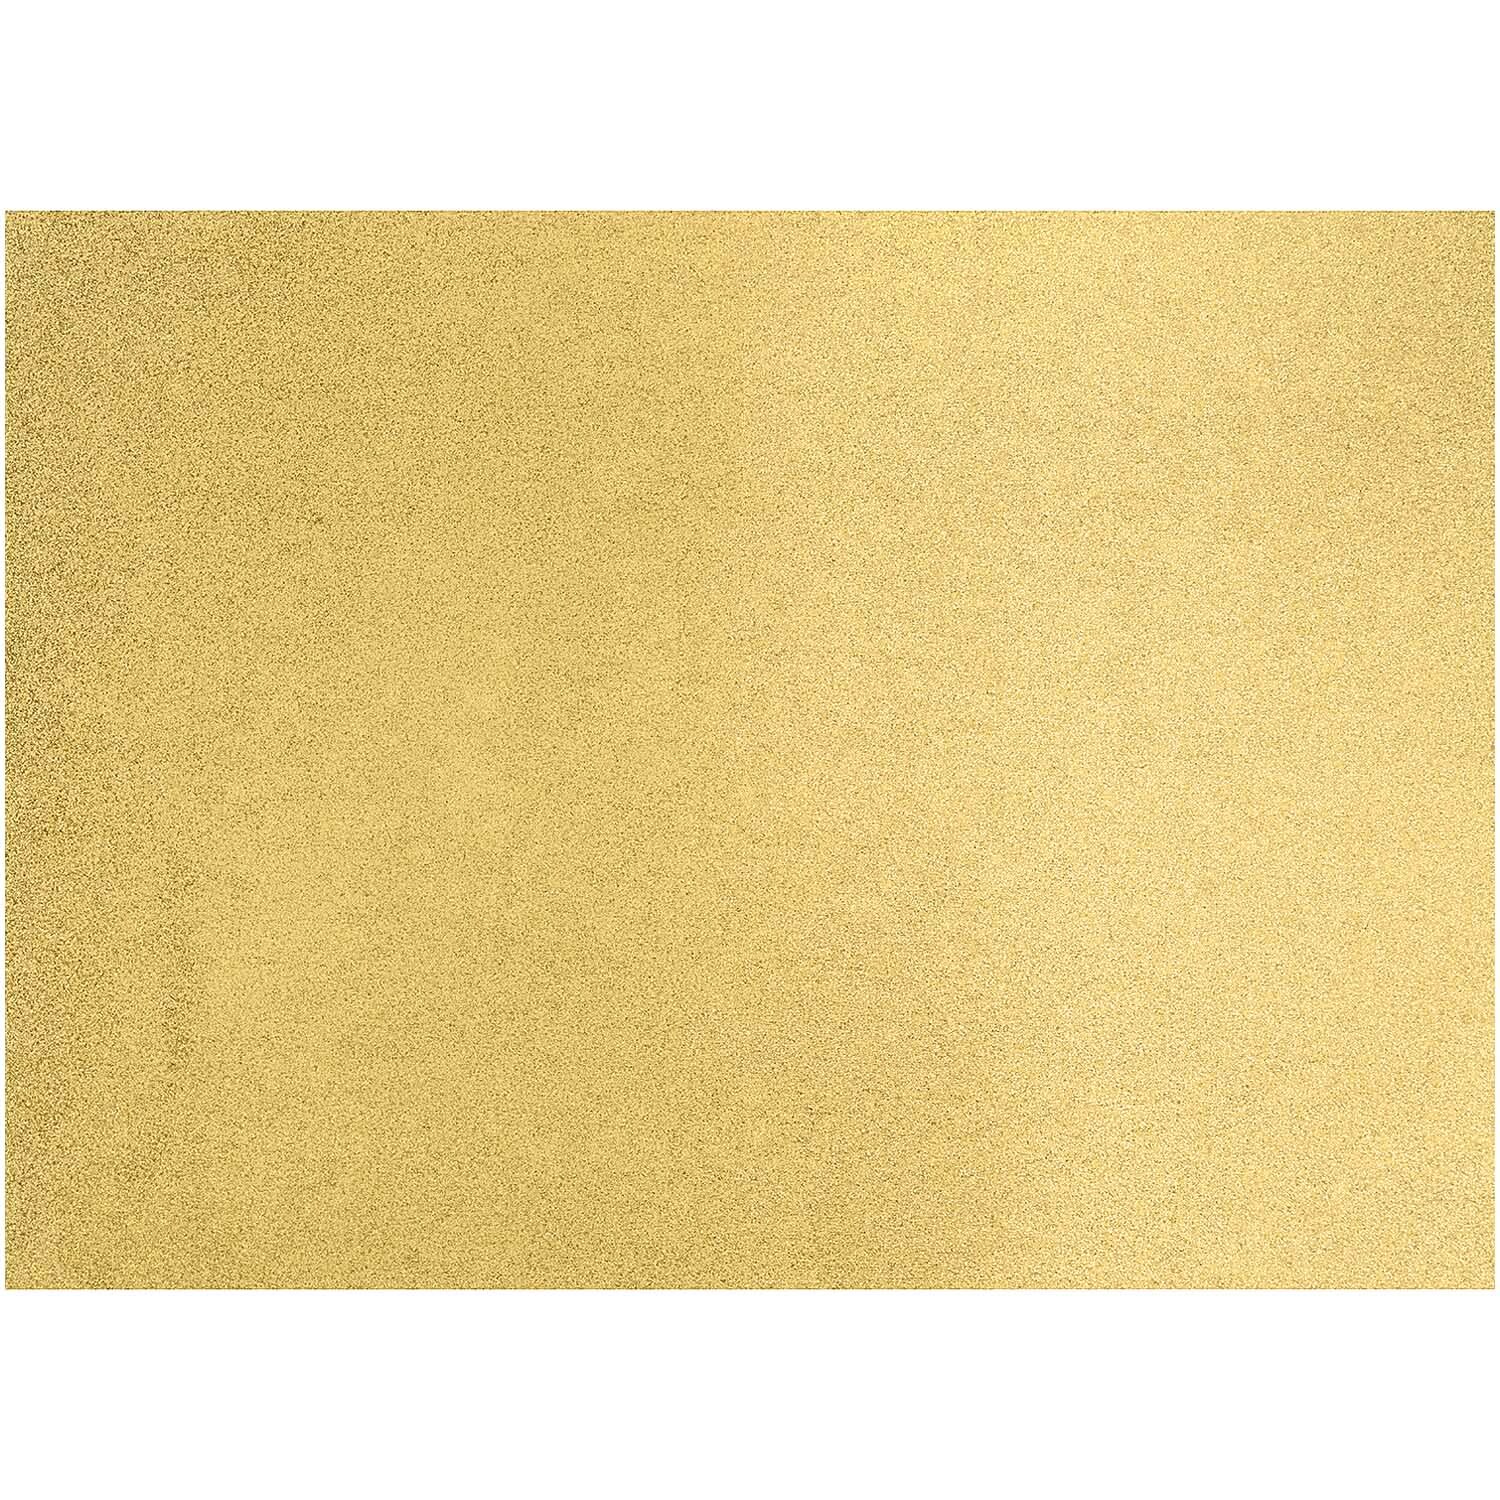 Paper Poetry Motivkarton Glitter gold 50x70cm